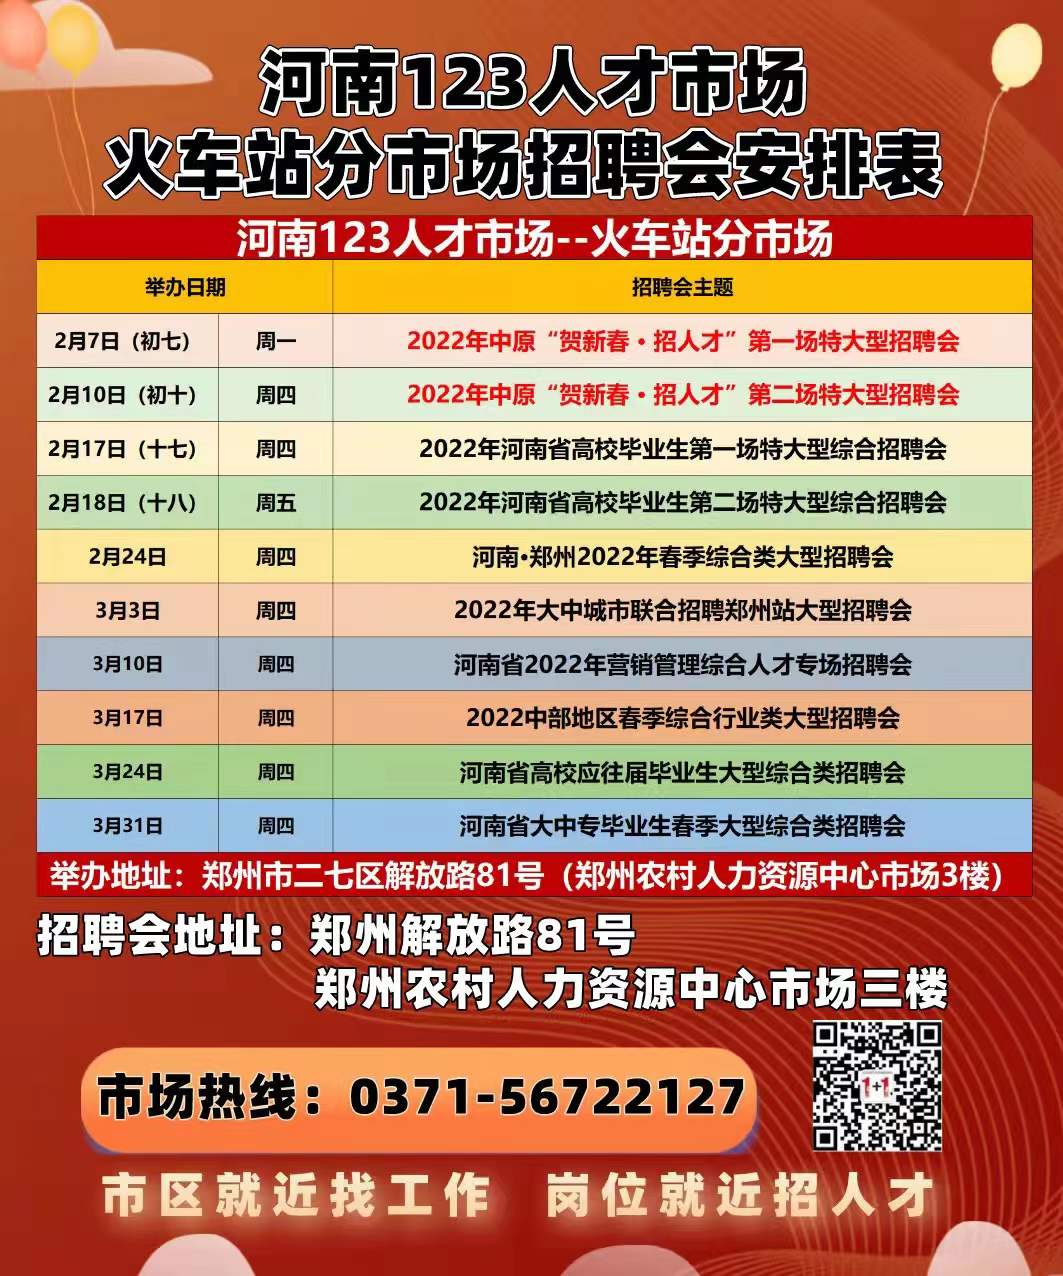 郑州延长网络招聘服务，春节后线下招聘会在正月初七